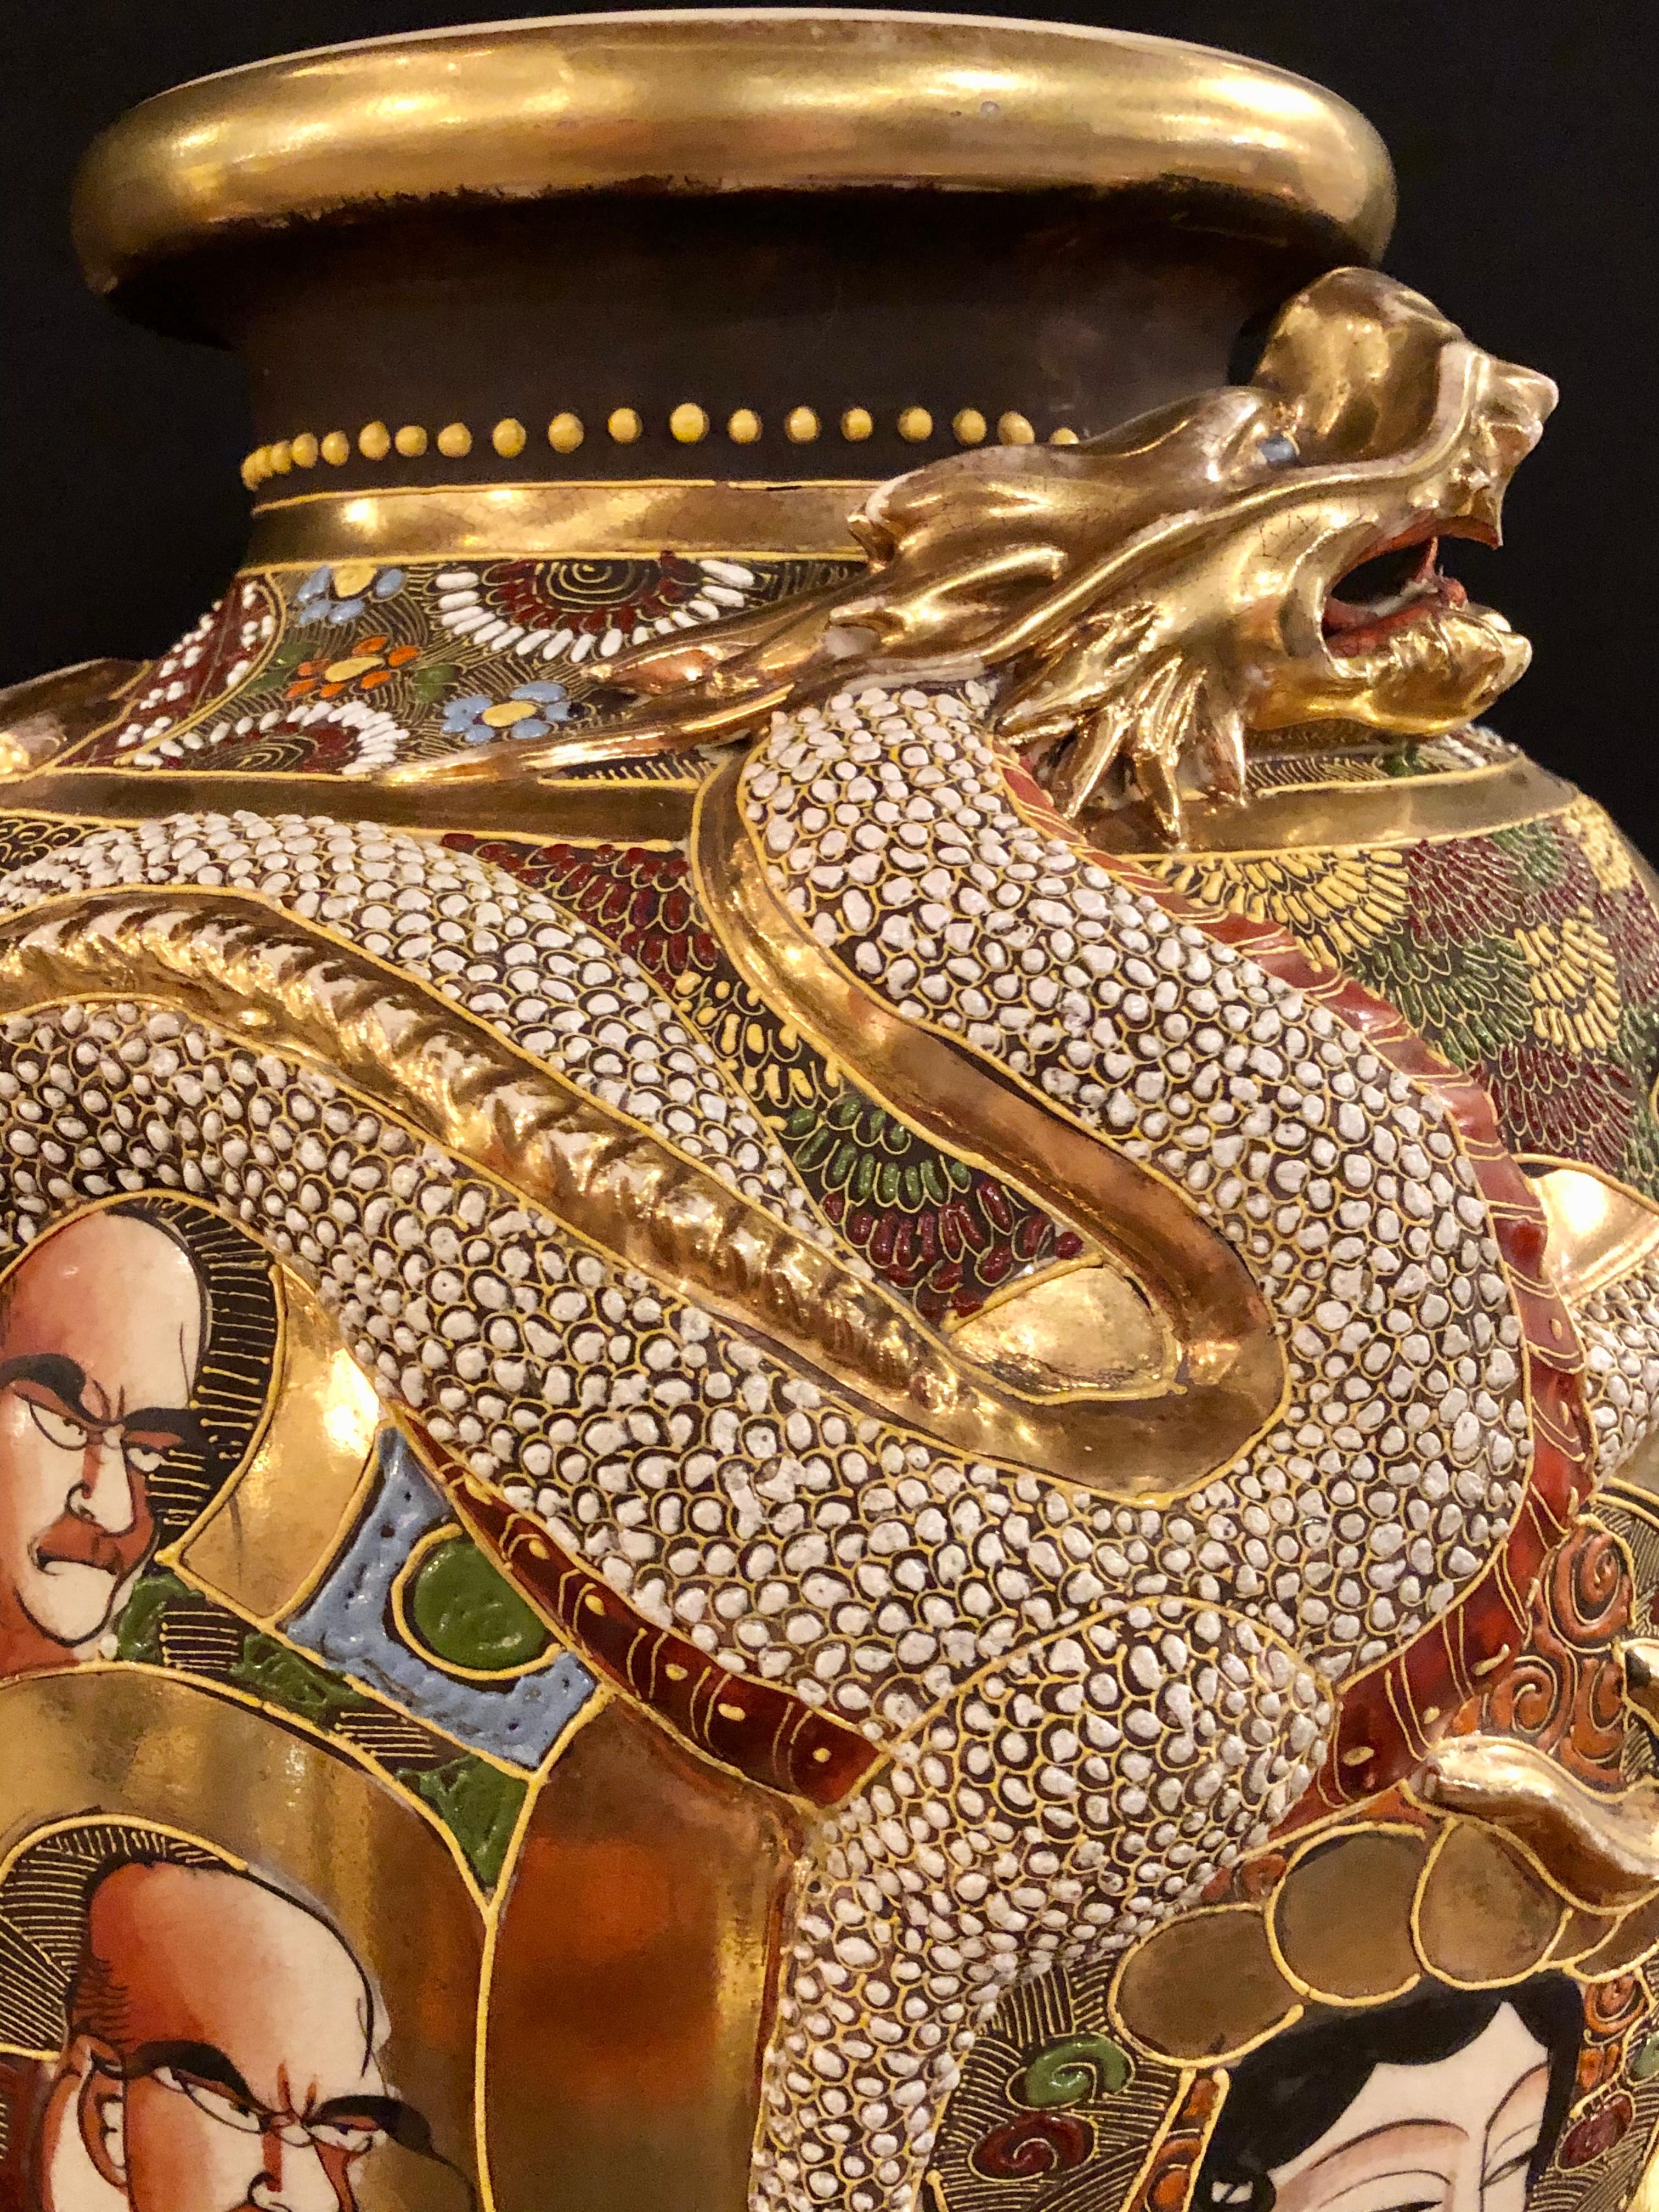 20th Century Japanese Satsuma Vase Large and Impressive Gilt Gold Dragon Decorated, Signed